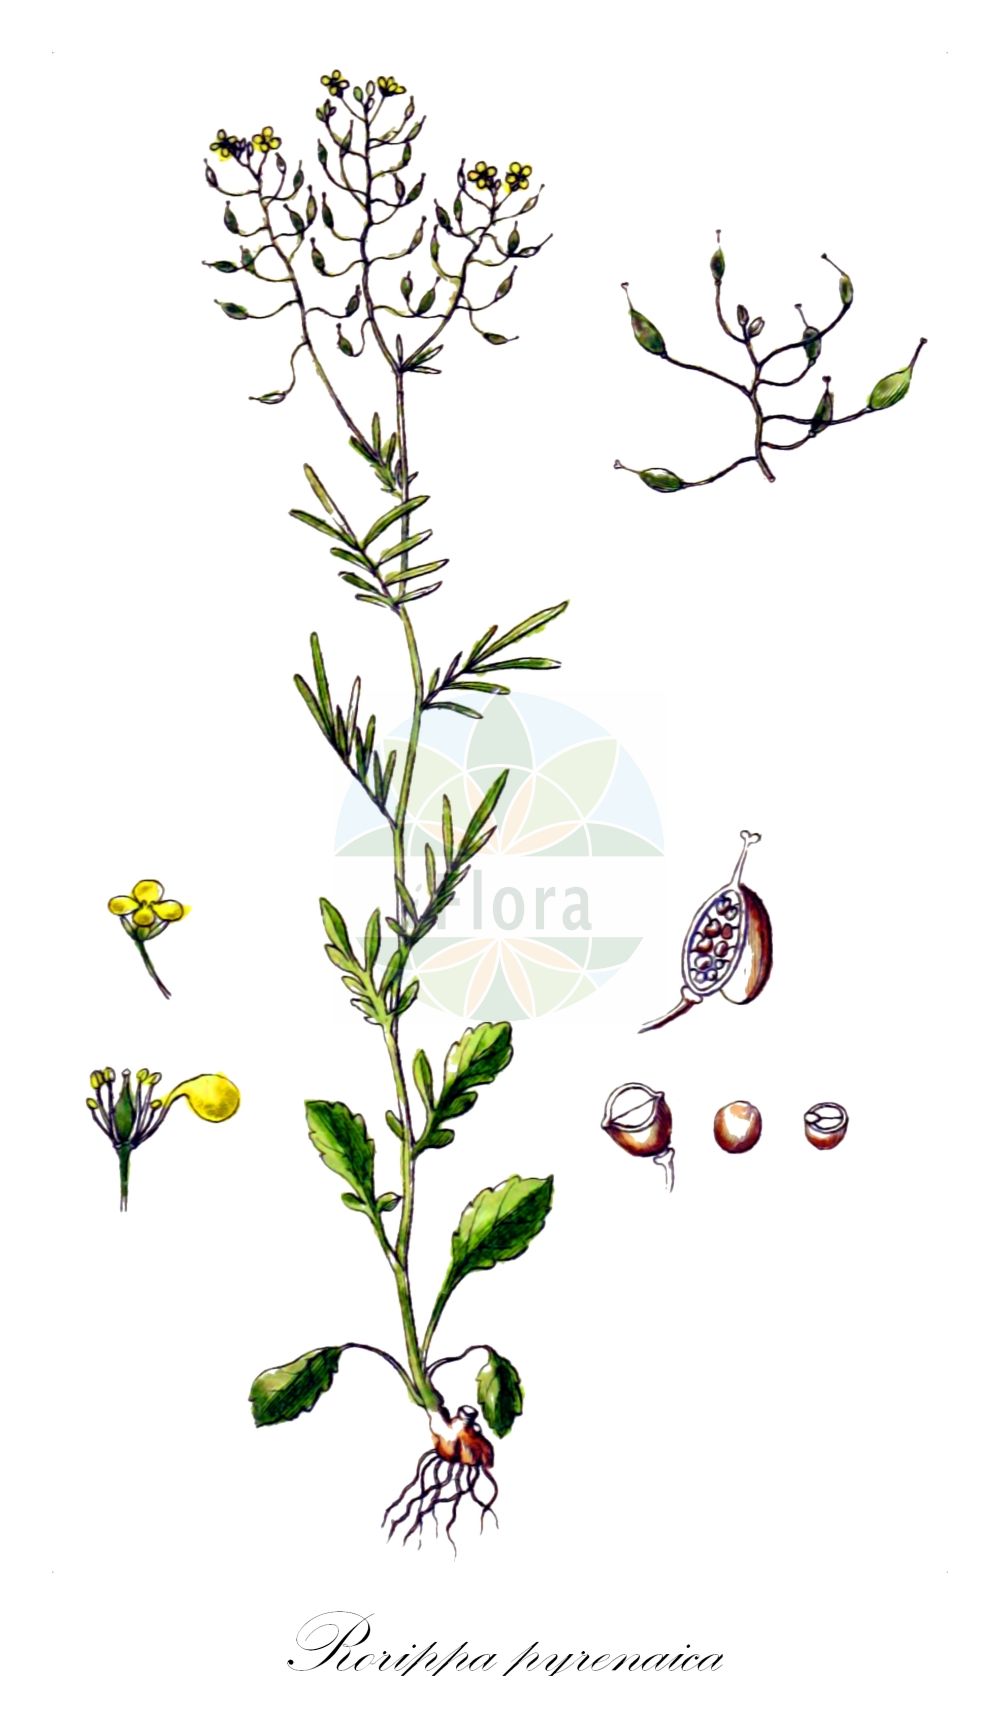 Historische Abbildung von Rorippa pyrenaica (Pyrenäen-Sumpfkresse - Pyrenean Yellowcress). Das Bild zeigt Blatt, Bluete, Frucht und Same. ---- Historical Drawing of Rorippa pyrenaica (Pyrenäen-Sumpfkresse - Pyrenean Yellowcress). The image is showing leaf, flower, fruit and seed.(Rorippa pyrenaica,Pyrenäen-Sumpfkresse,Pyrenean Yellowcress,Brachiolobos pyrenaicus,Lepidium stylosum,Nasturtium hispanicum,Nasturtium pyrenaicum,Rorippa hispanica,Rorippa pyrenaica,Rorippa stylosa,Pyrenaeen-Sumpfkresse,Pyrenean Yellowcress,Rorippa,Sumpfkresse,Yellowcress,Brassicaceae,Kreuzblütler,Cabbage family,Blatt,Bluete,Frucht,Same,leaf,flower,fruit,seed,Sturm (1796f))